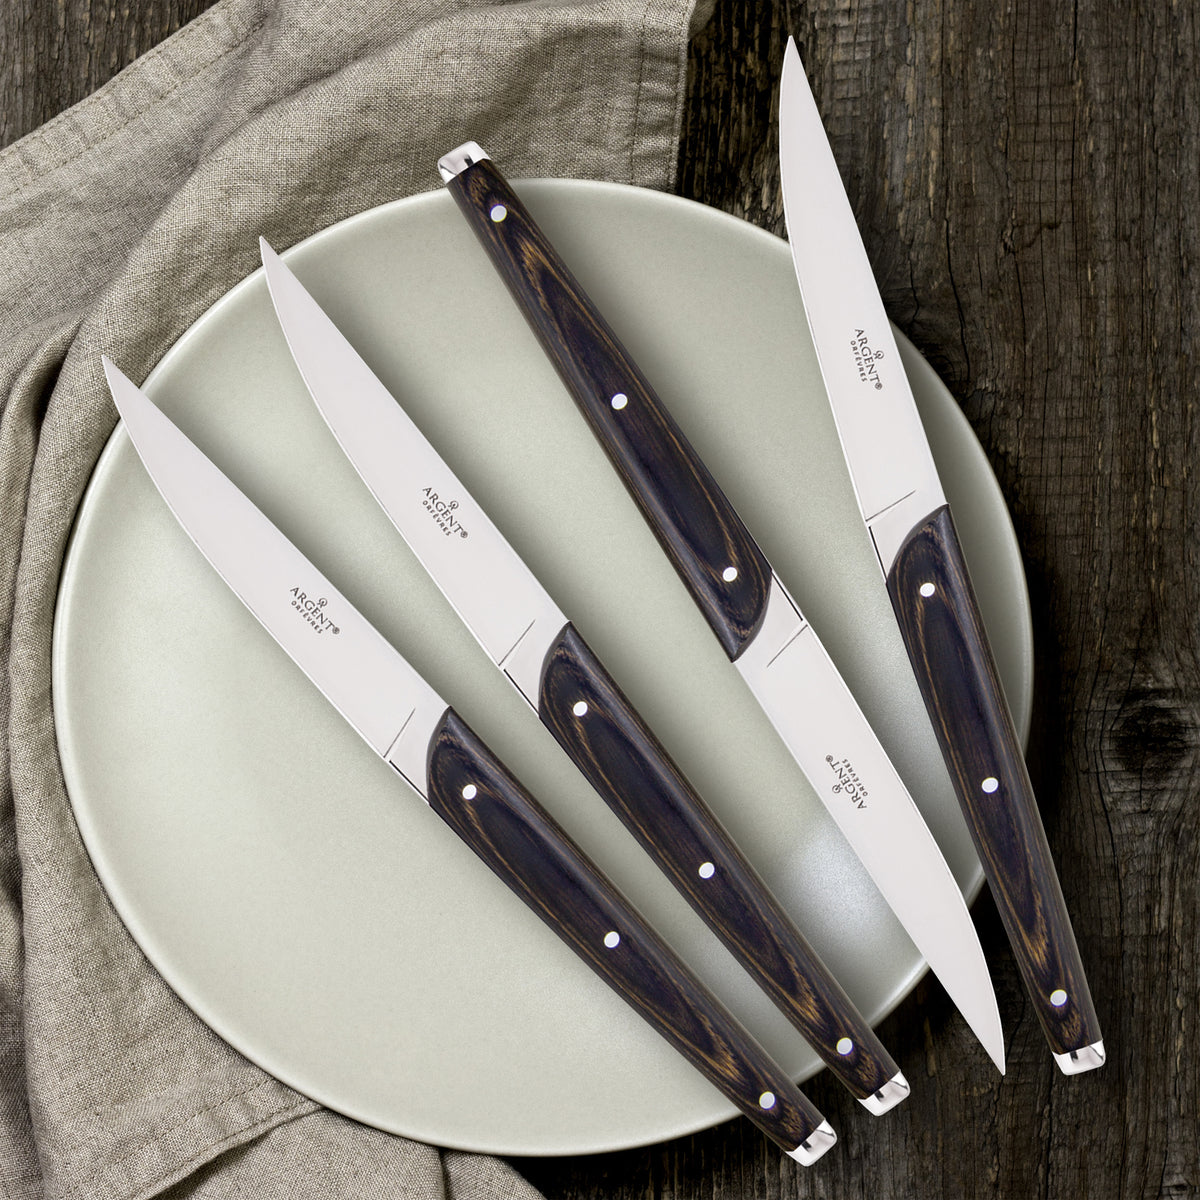 Oneida Steak Knives Seville, Elite Steak Knives Pack - 12 per Case